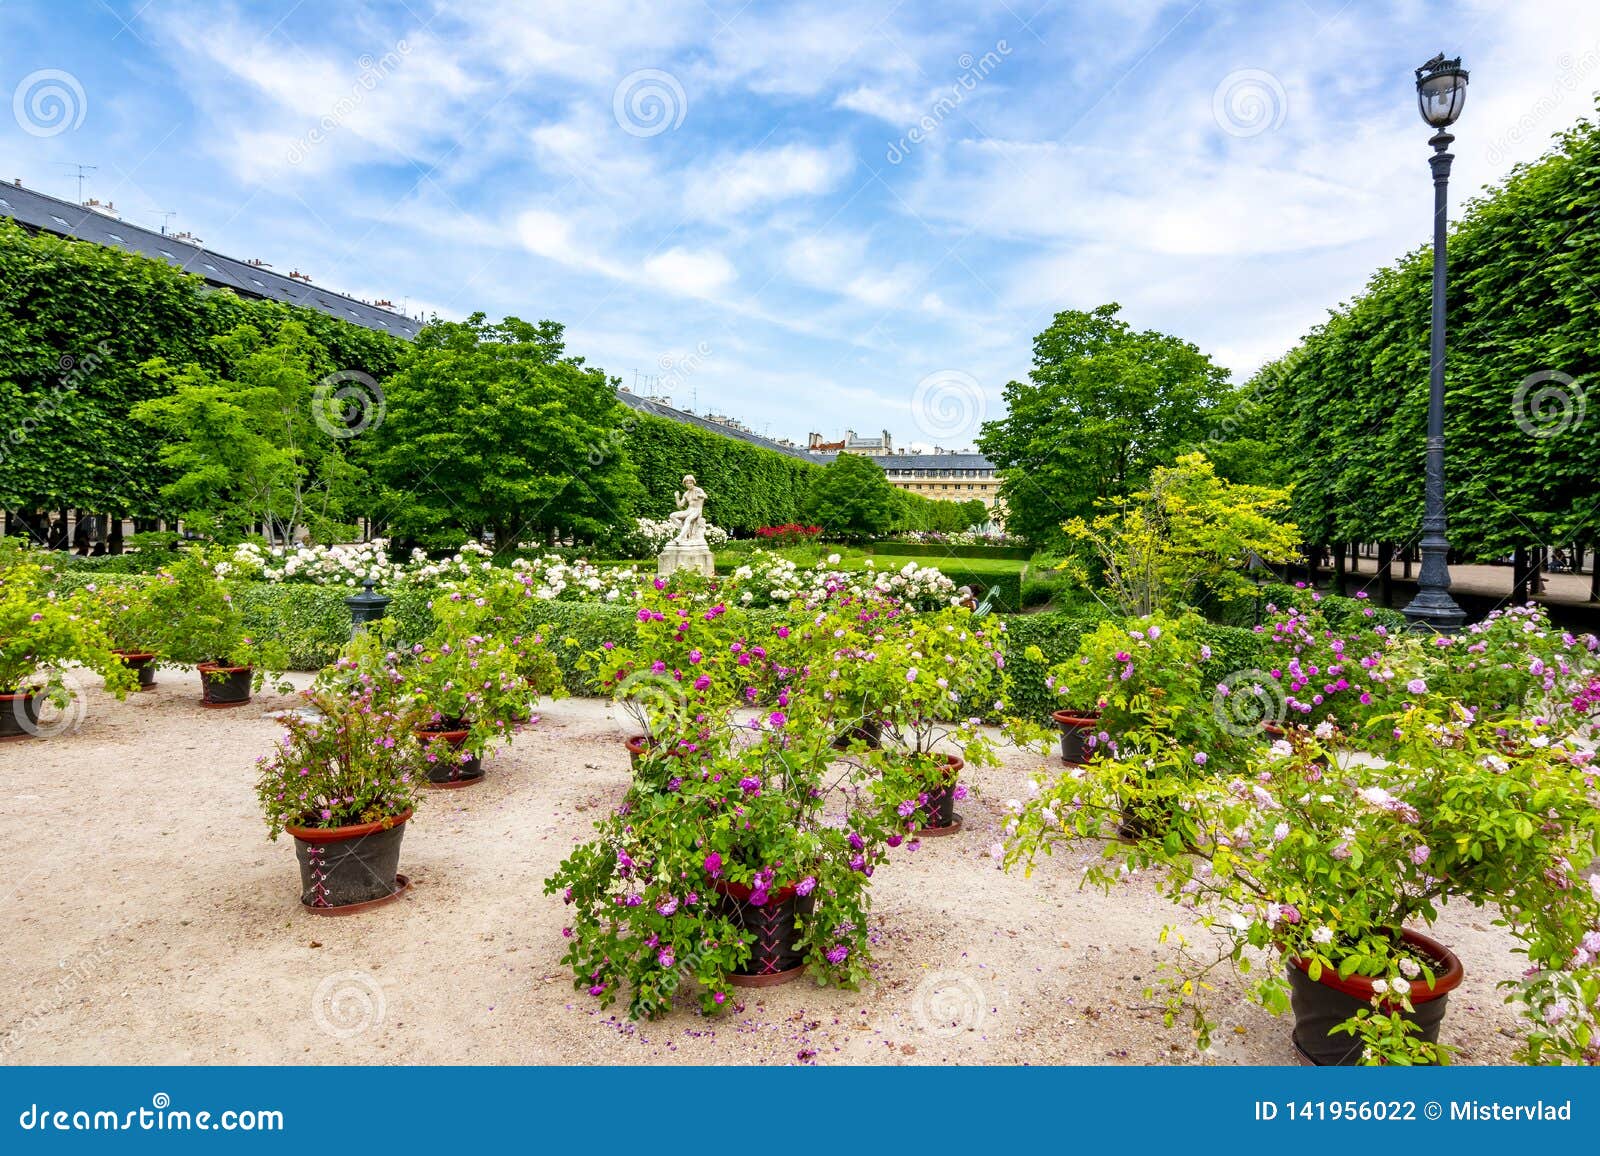 Palais Royal Garden In Center Of Paris France Stock Photo Image